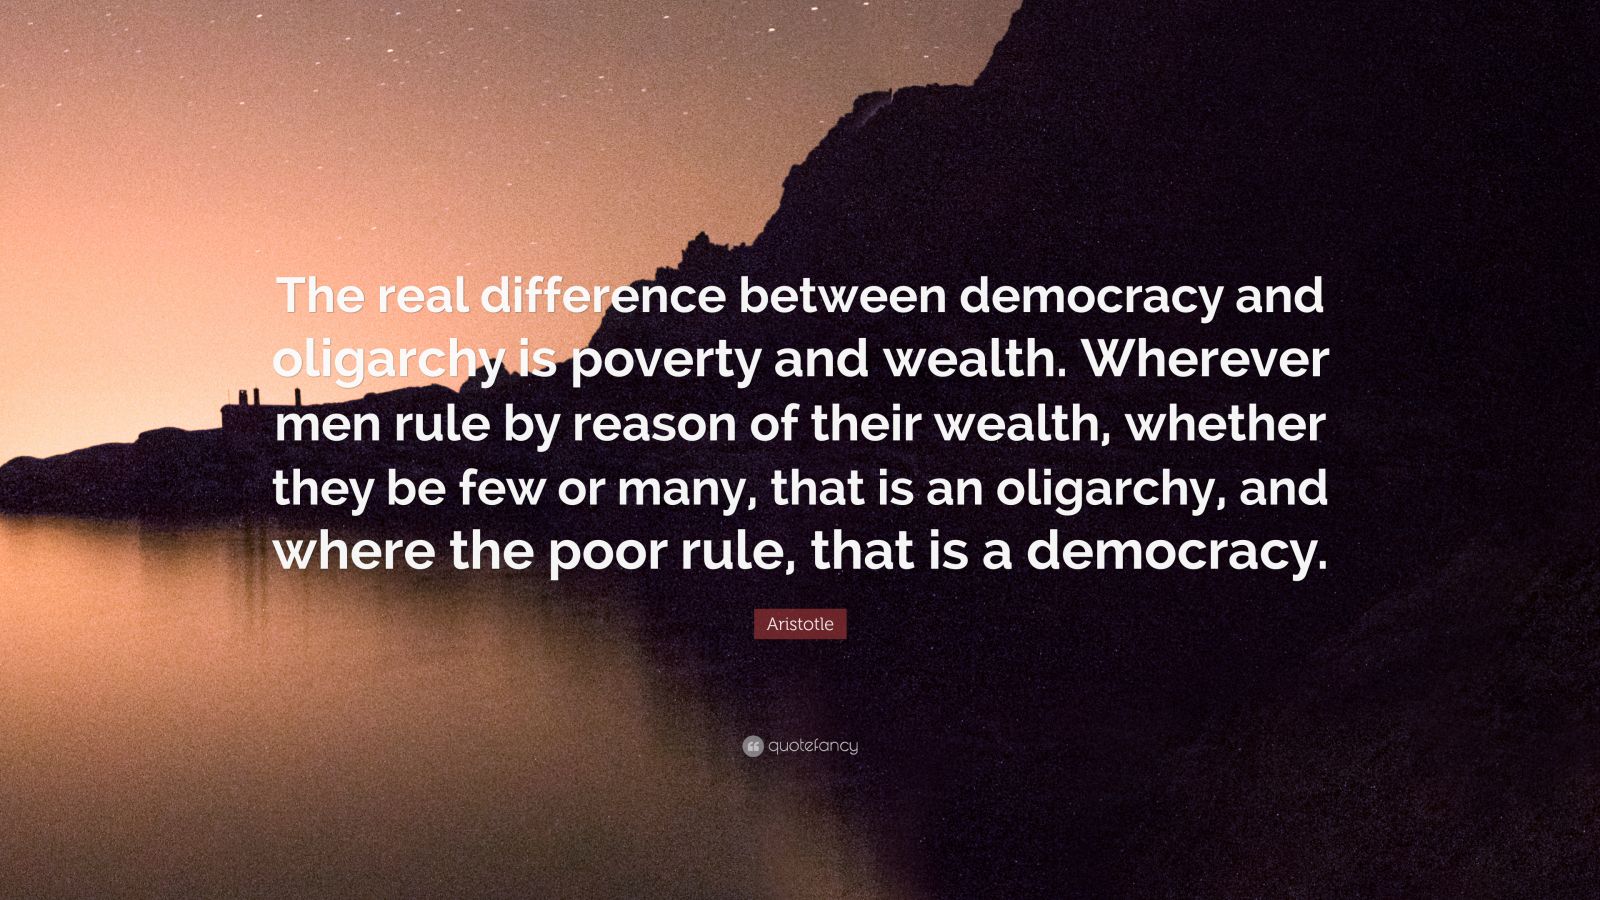 aristotle view on democracy